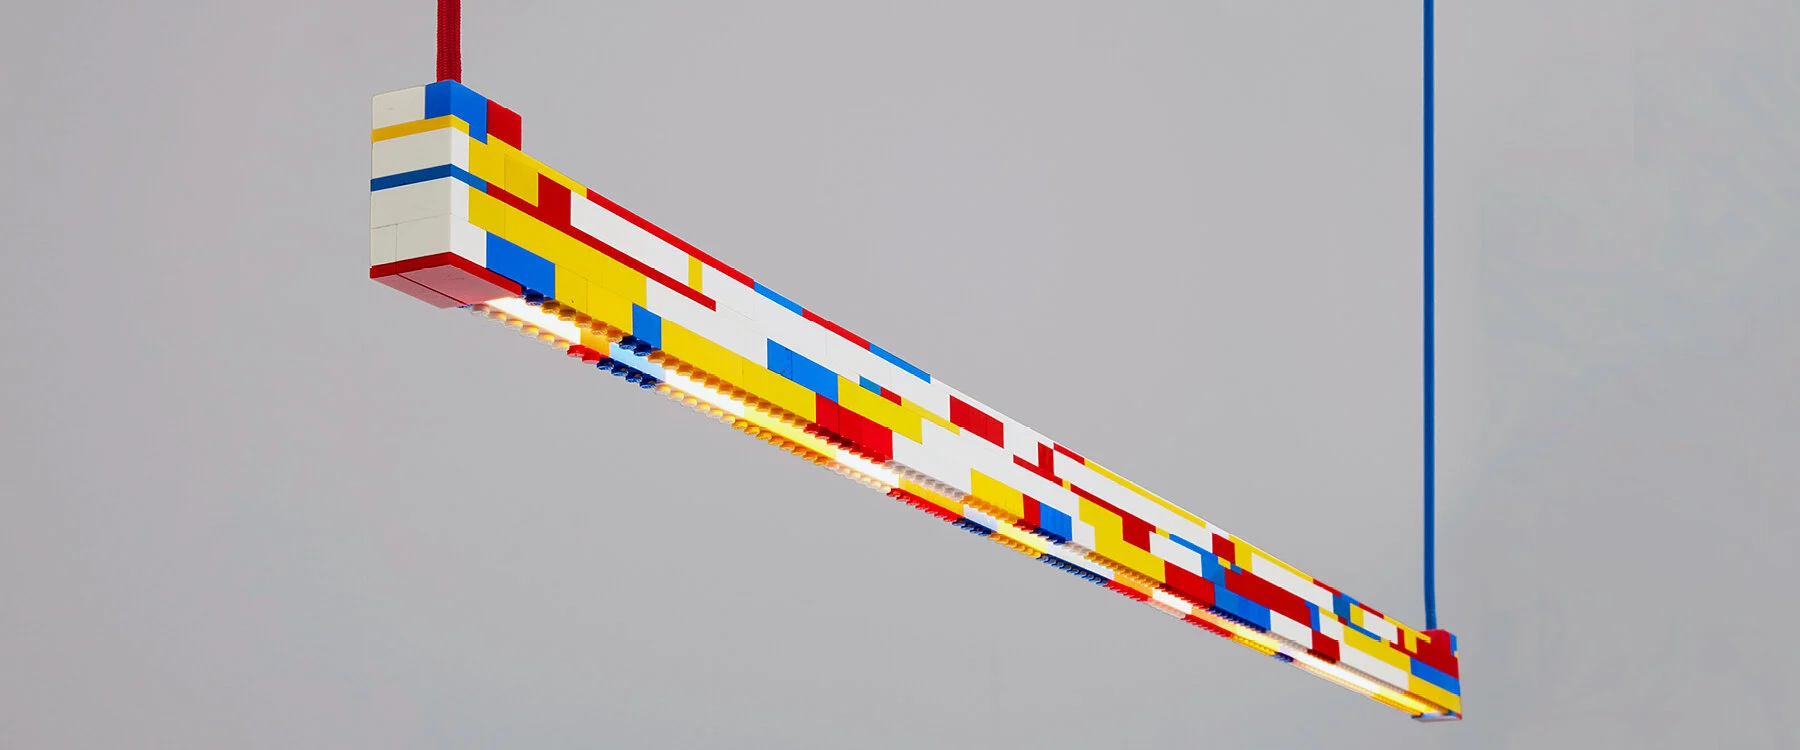 La luz de ladrillo LEGO reutilizada de ambience studio emana un divertido caleidoscopio de color.